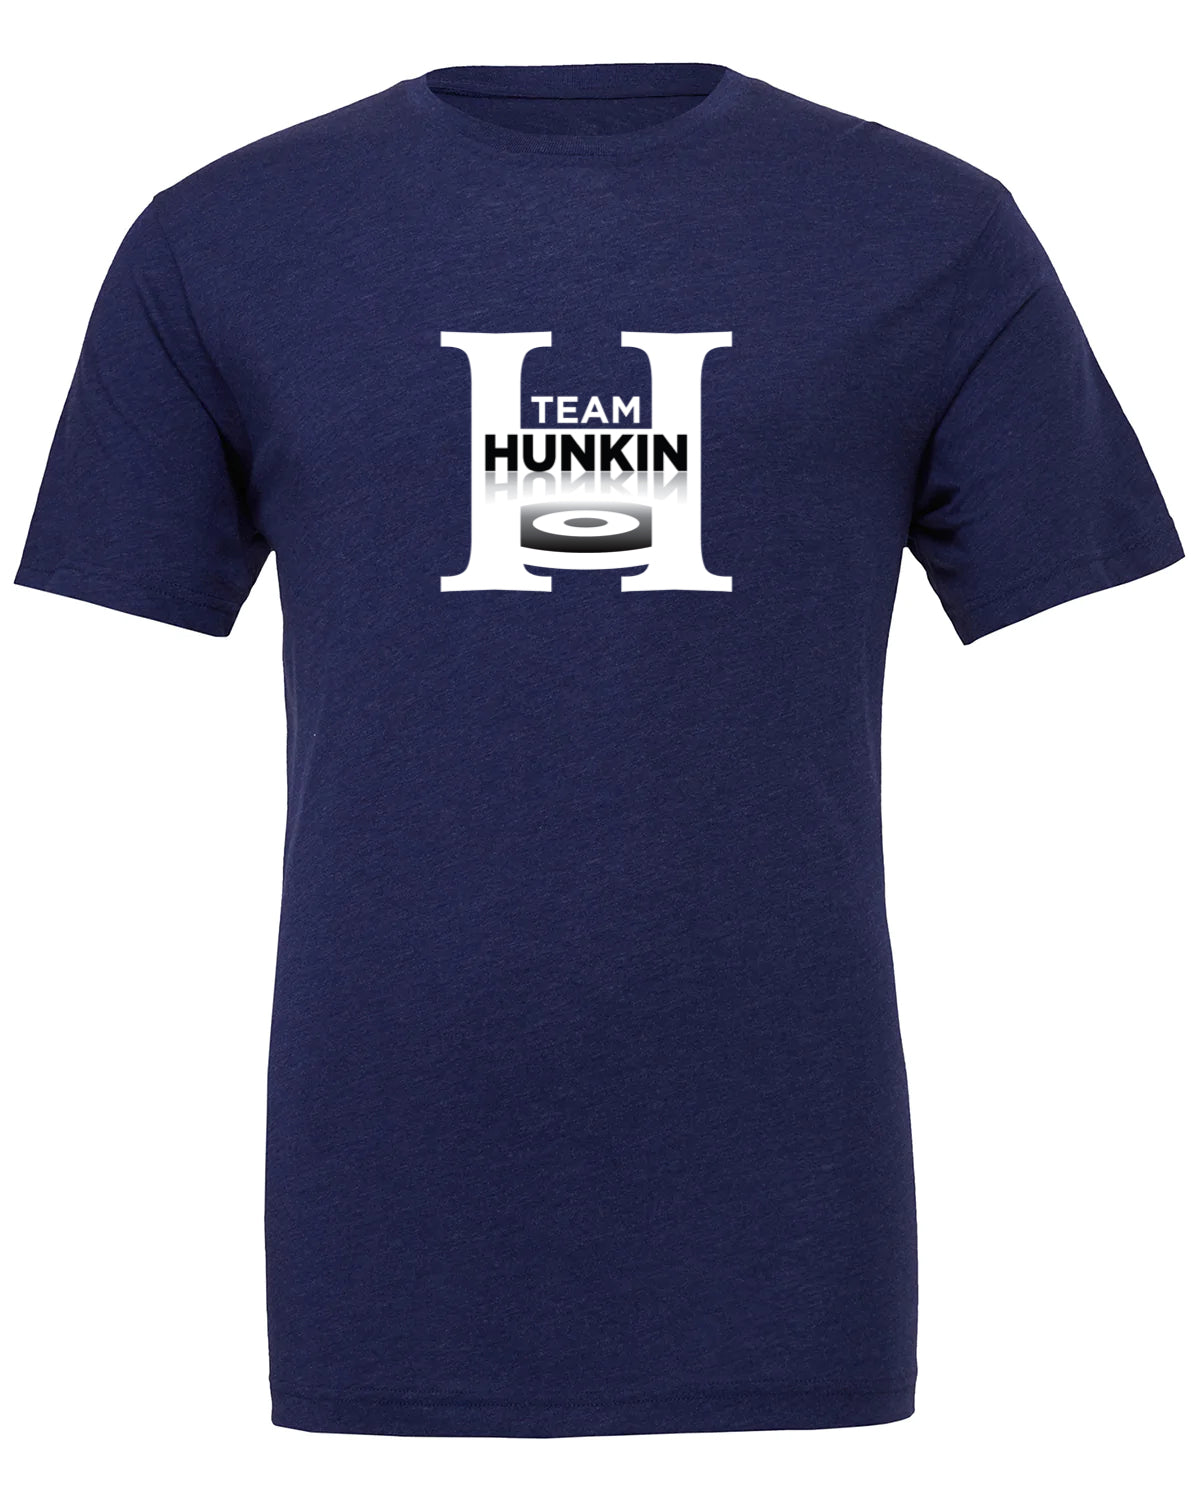 Team Hunkin Tee ( Unisex Fit)